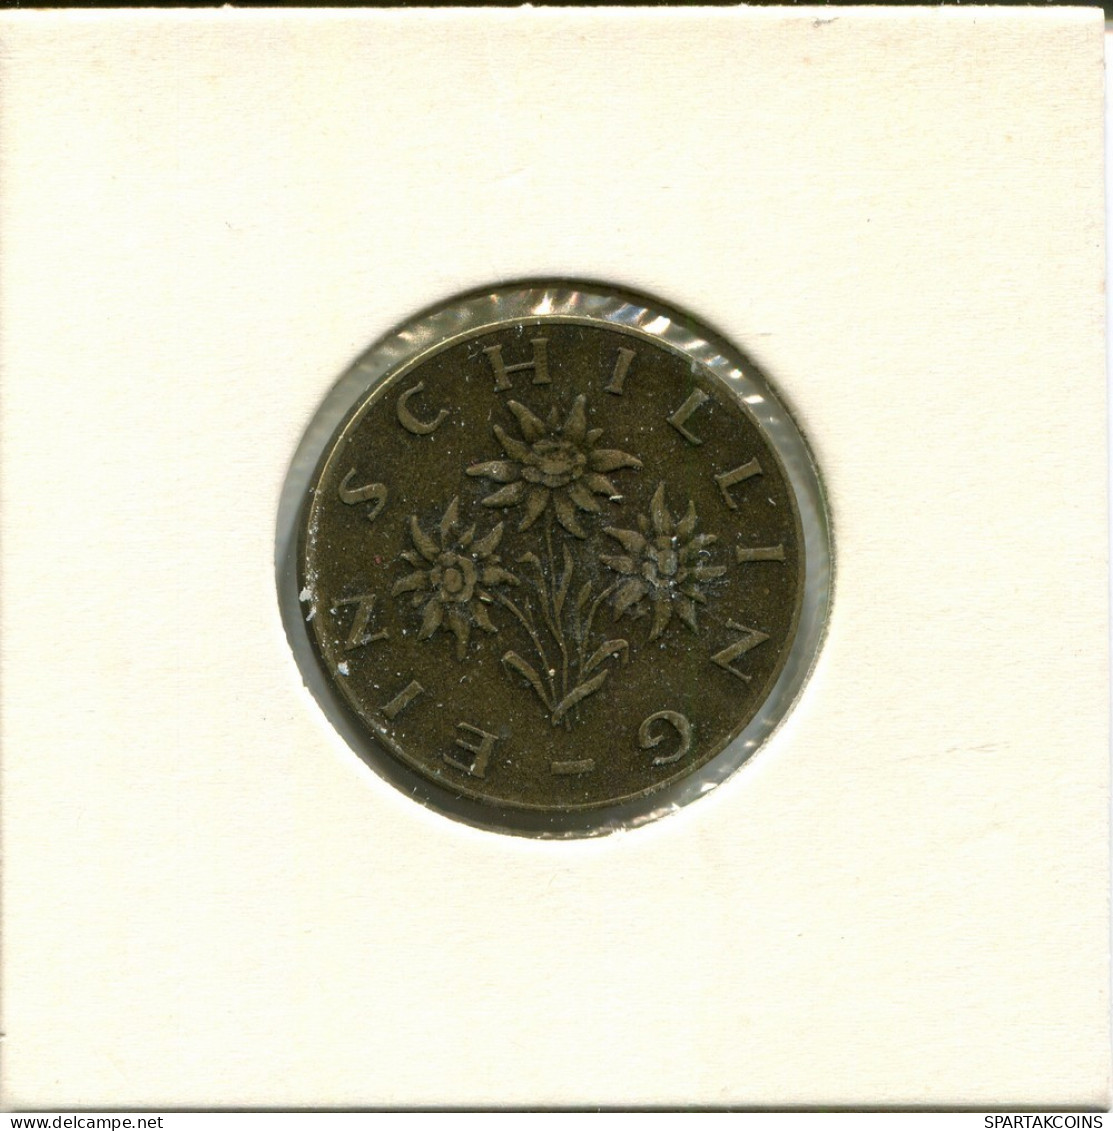 1 SCHILLING 1959 AUSTRIA Coin #AV067.U.A - Oesterreich